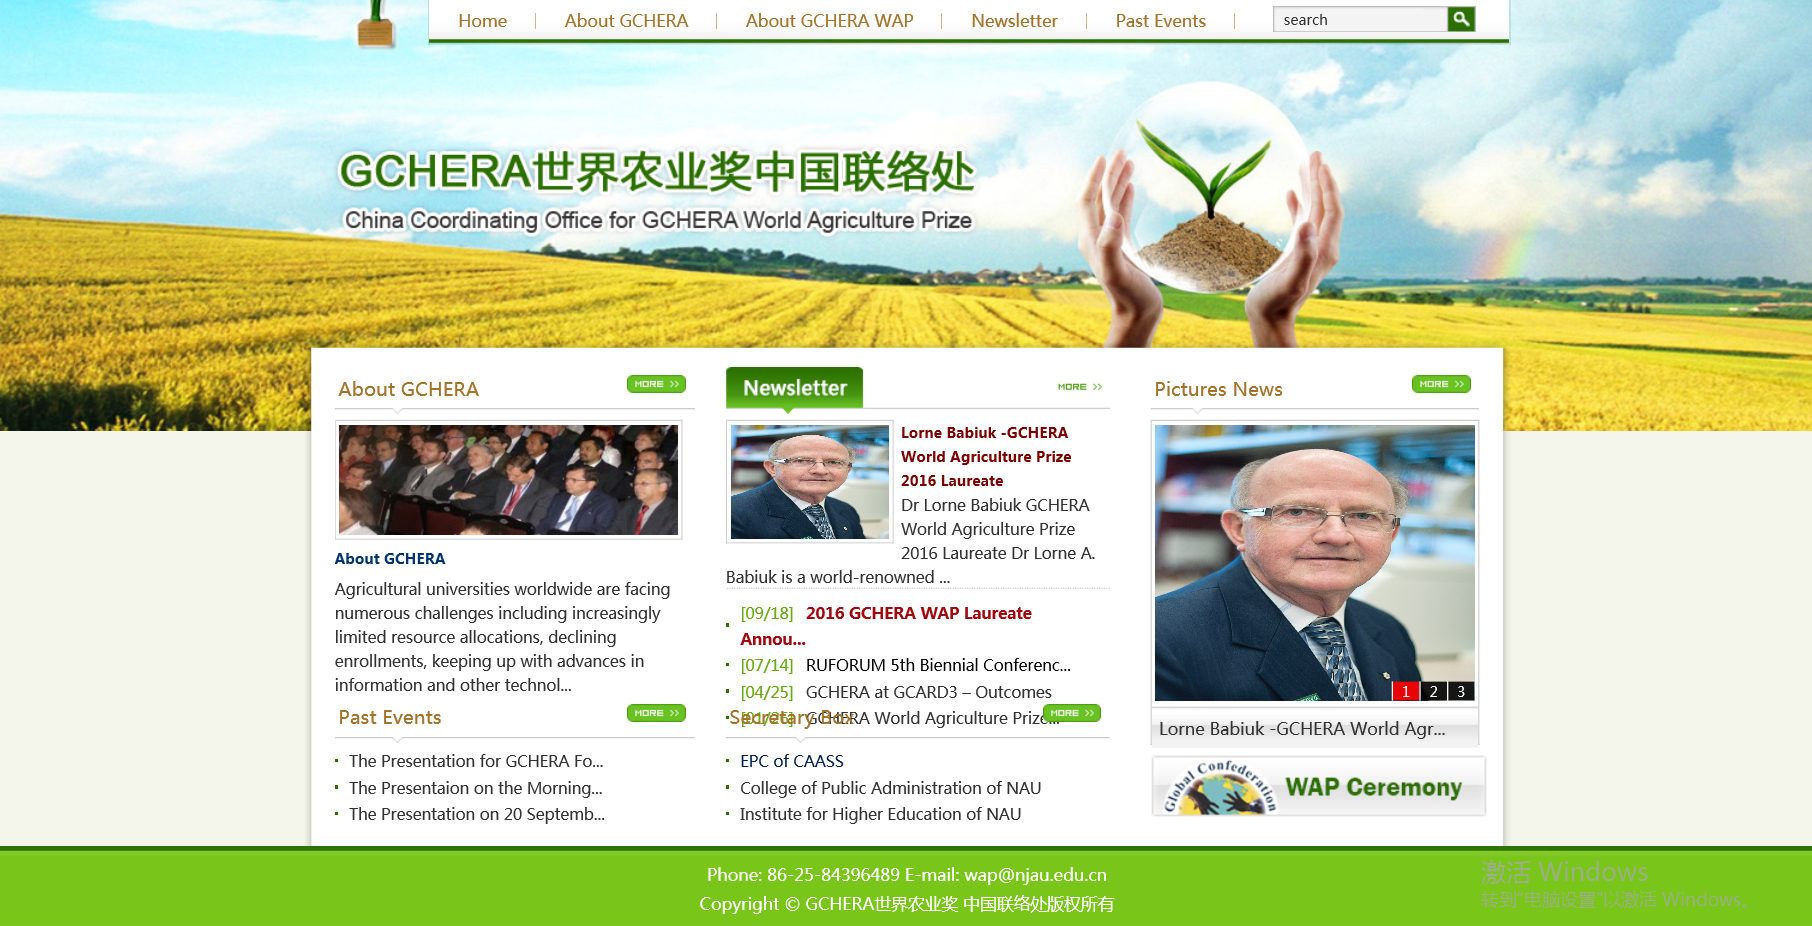 世界農業獎中國聯絡處